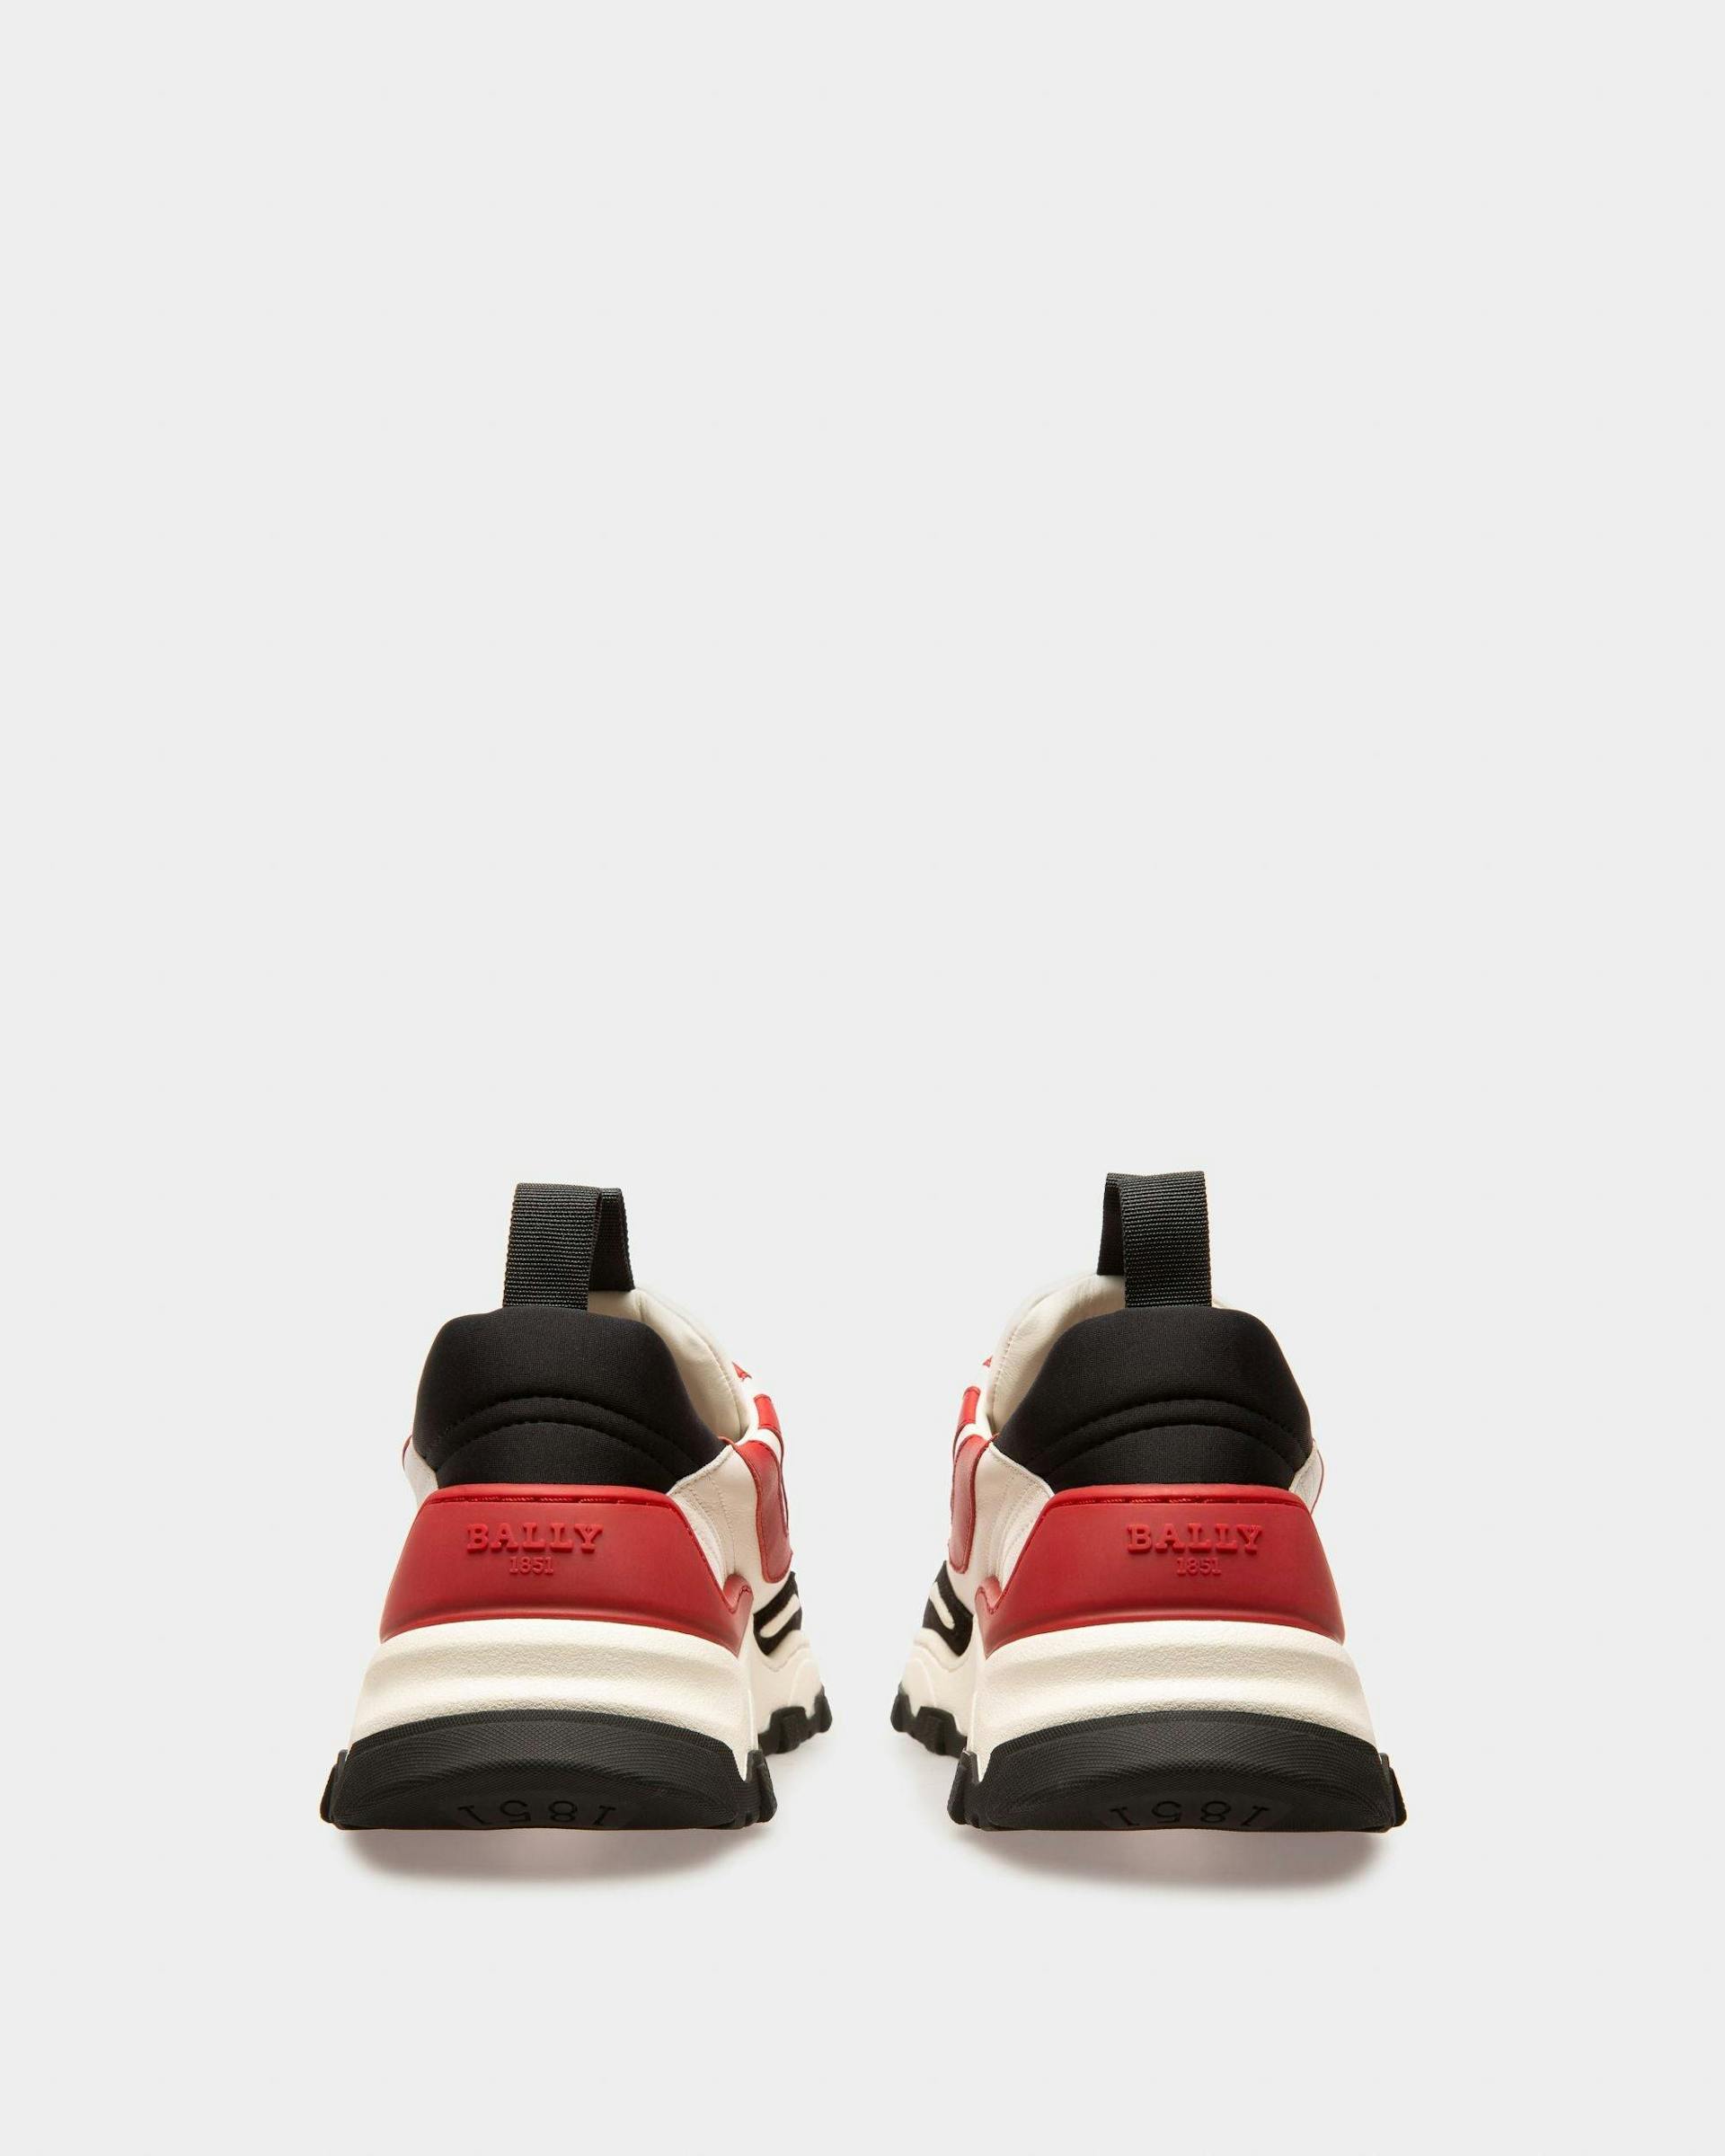 Harrys Sneakers In Pelle Rossa, Bianca E Nera - Uomo - Bally - 04